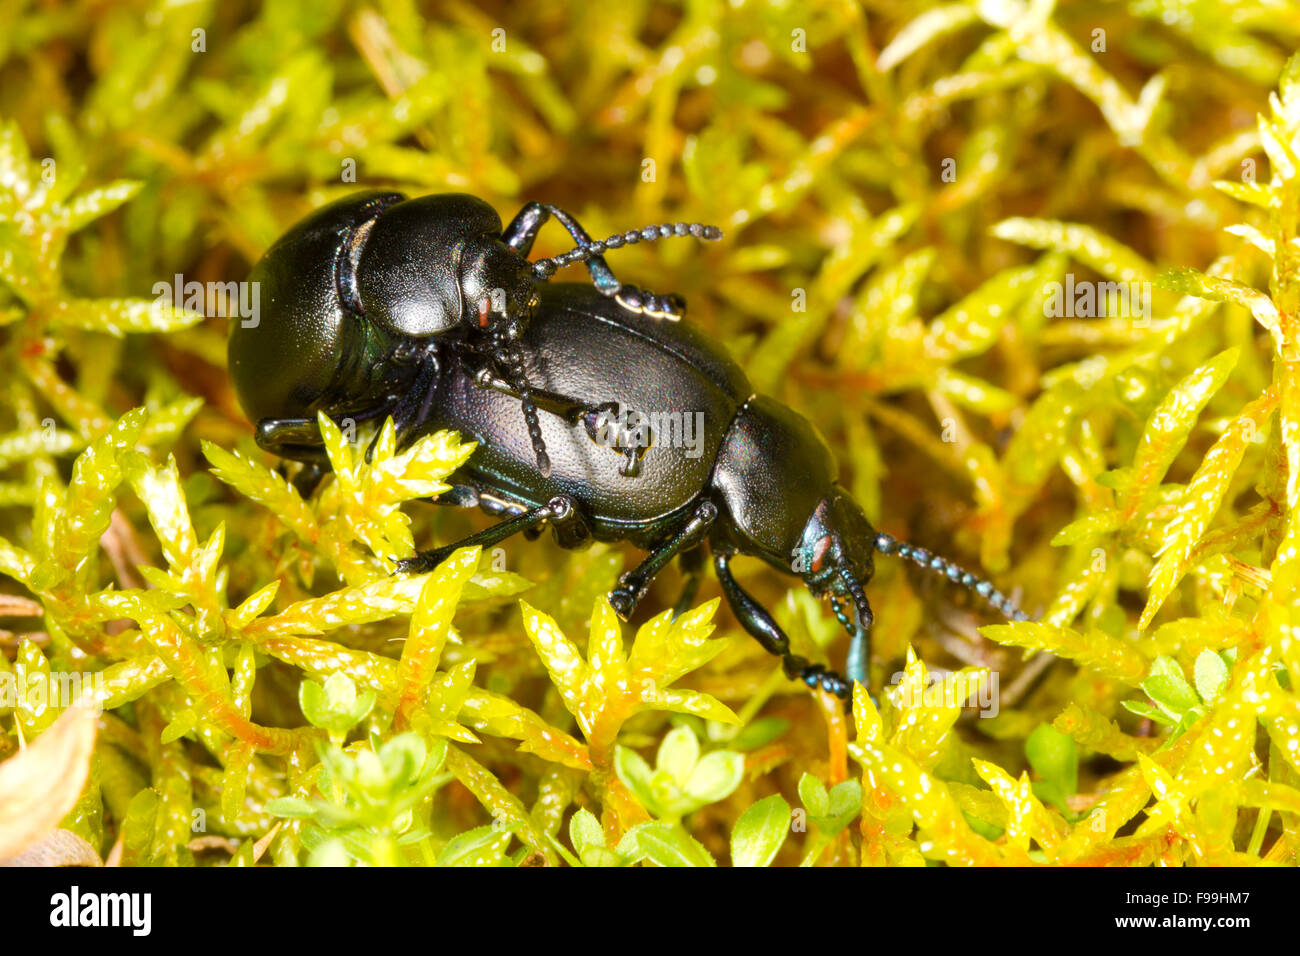 Les coléoptères à nez sanglant (Timarcha tenebricosa) Coléoptères adultes accouplement de mousse. Powys, Pays de Galles, juillet. Banque D'Images